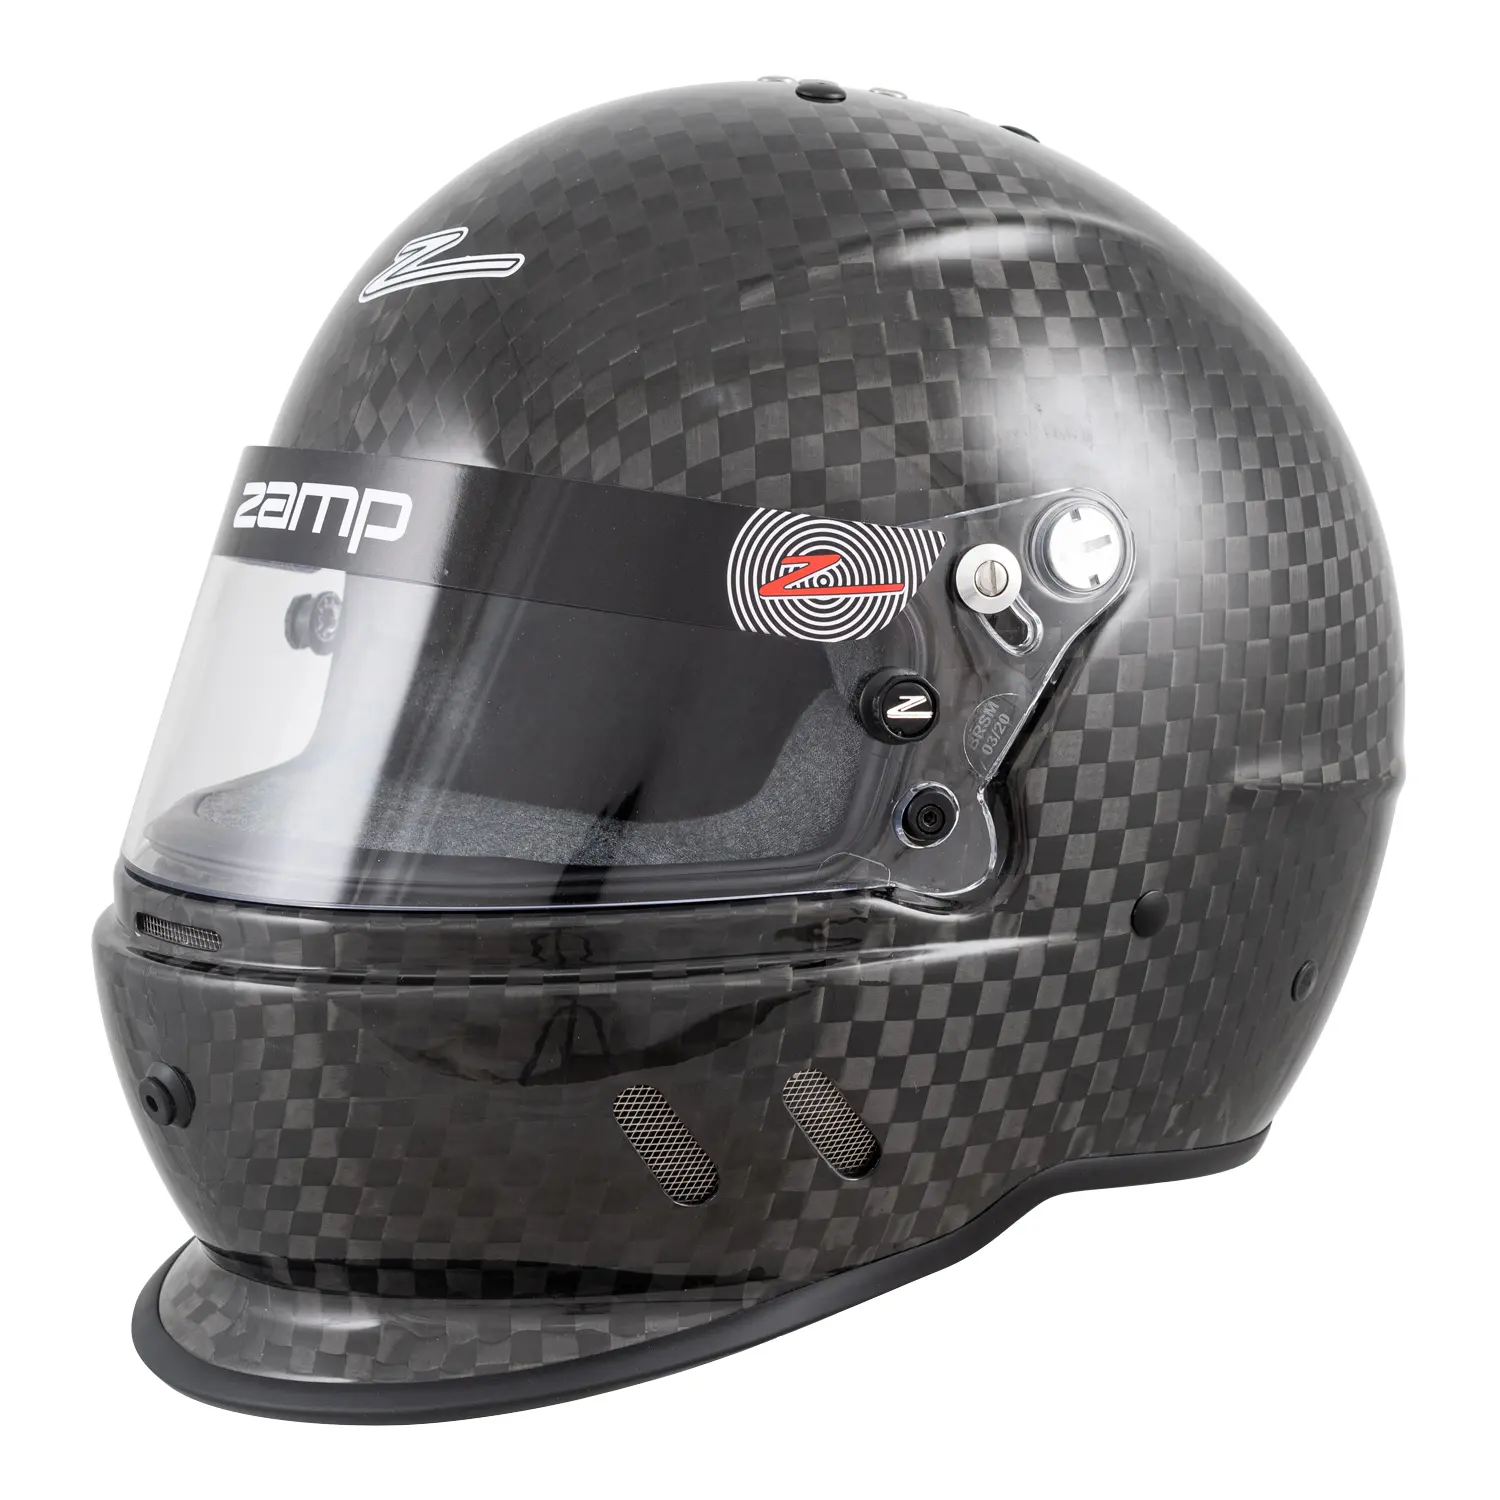 RZ-65D Graphic Helmet